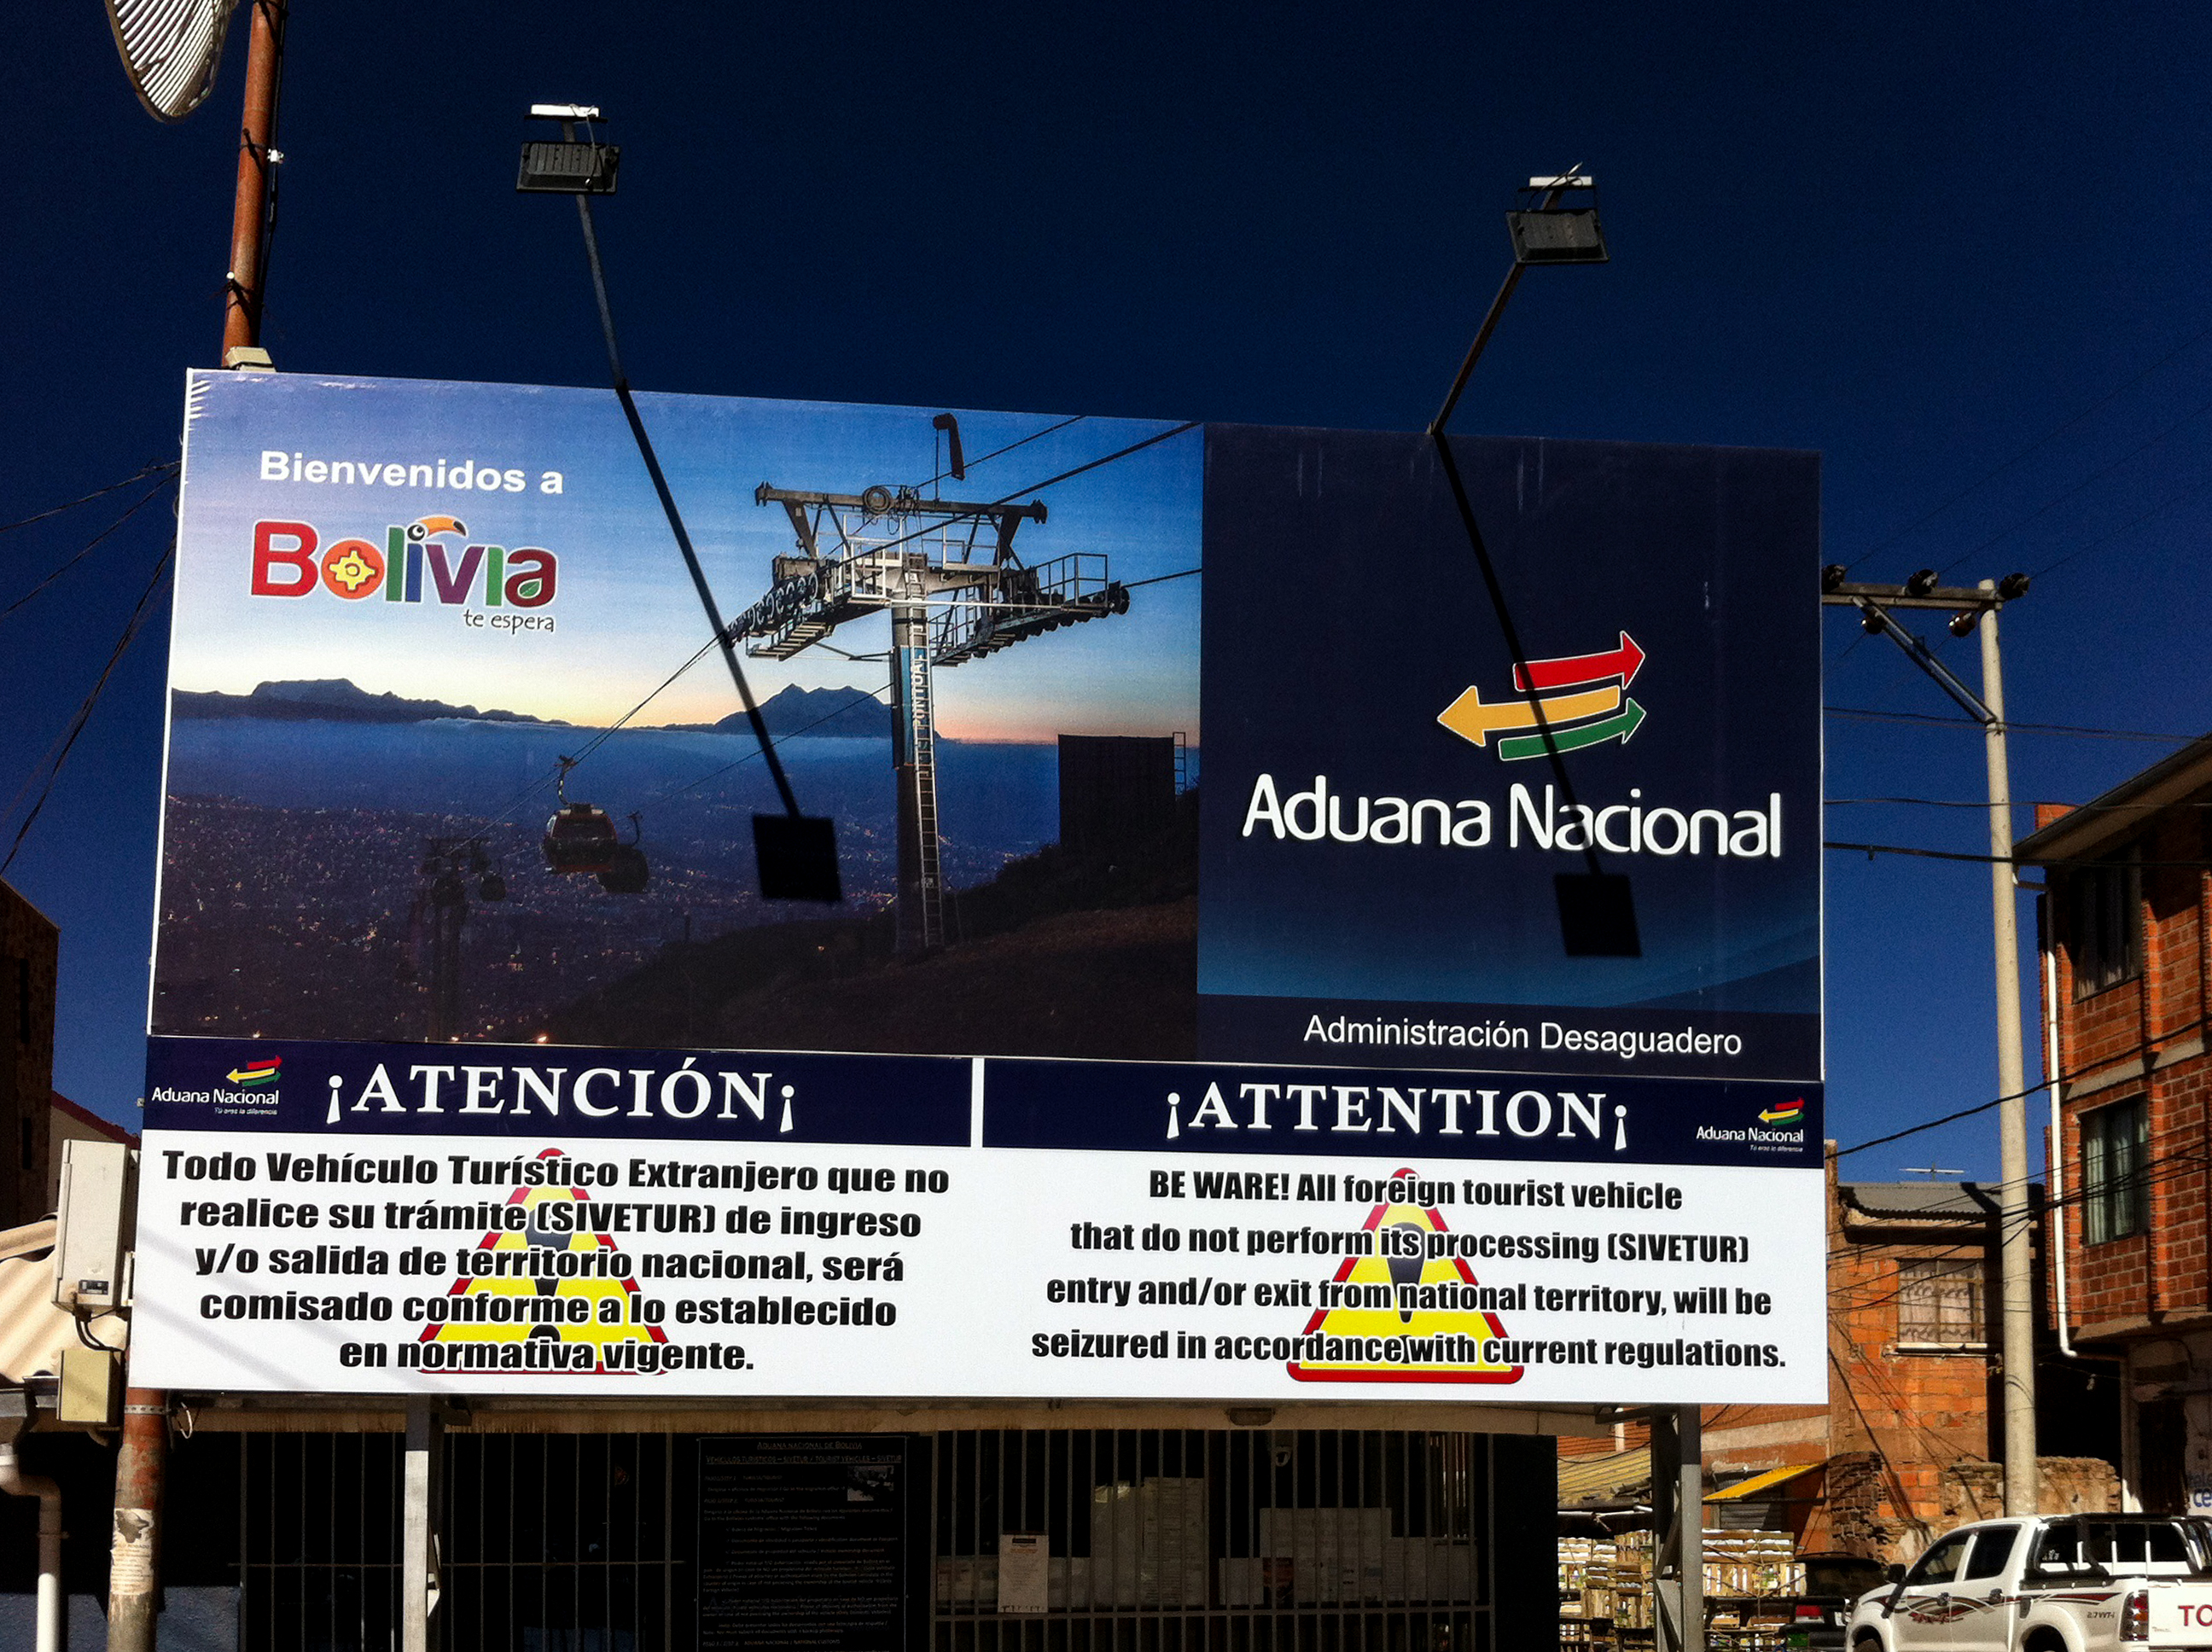 La entrada a Bolivia Desaguadero, Frontera Bolivia-Perú